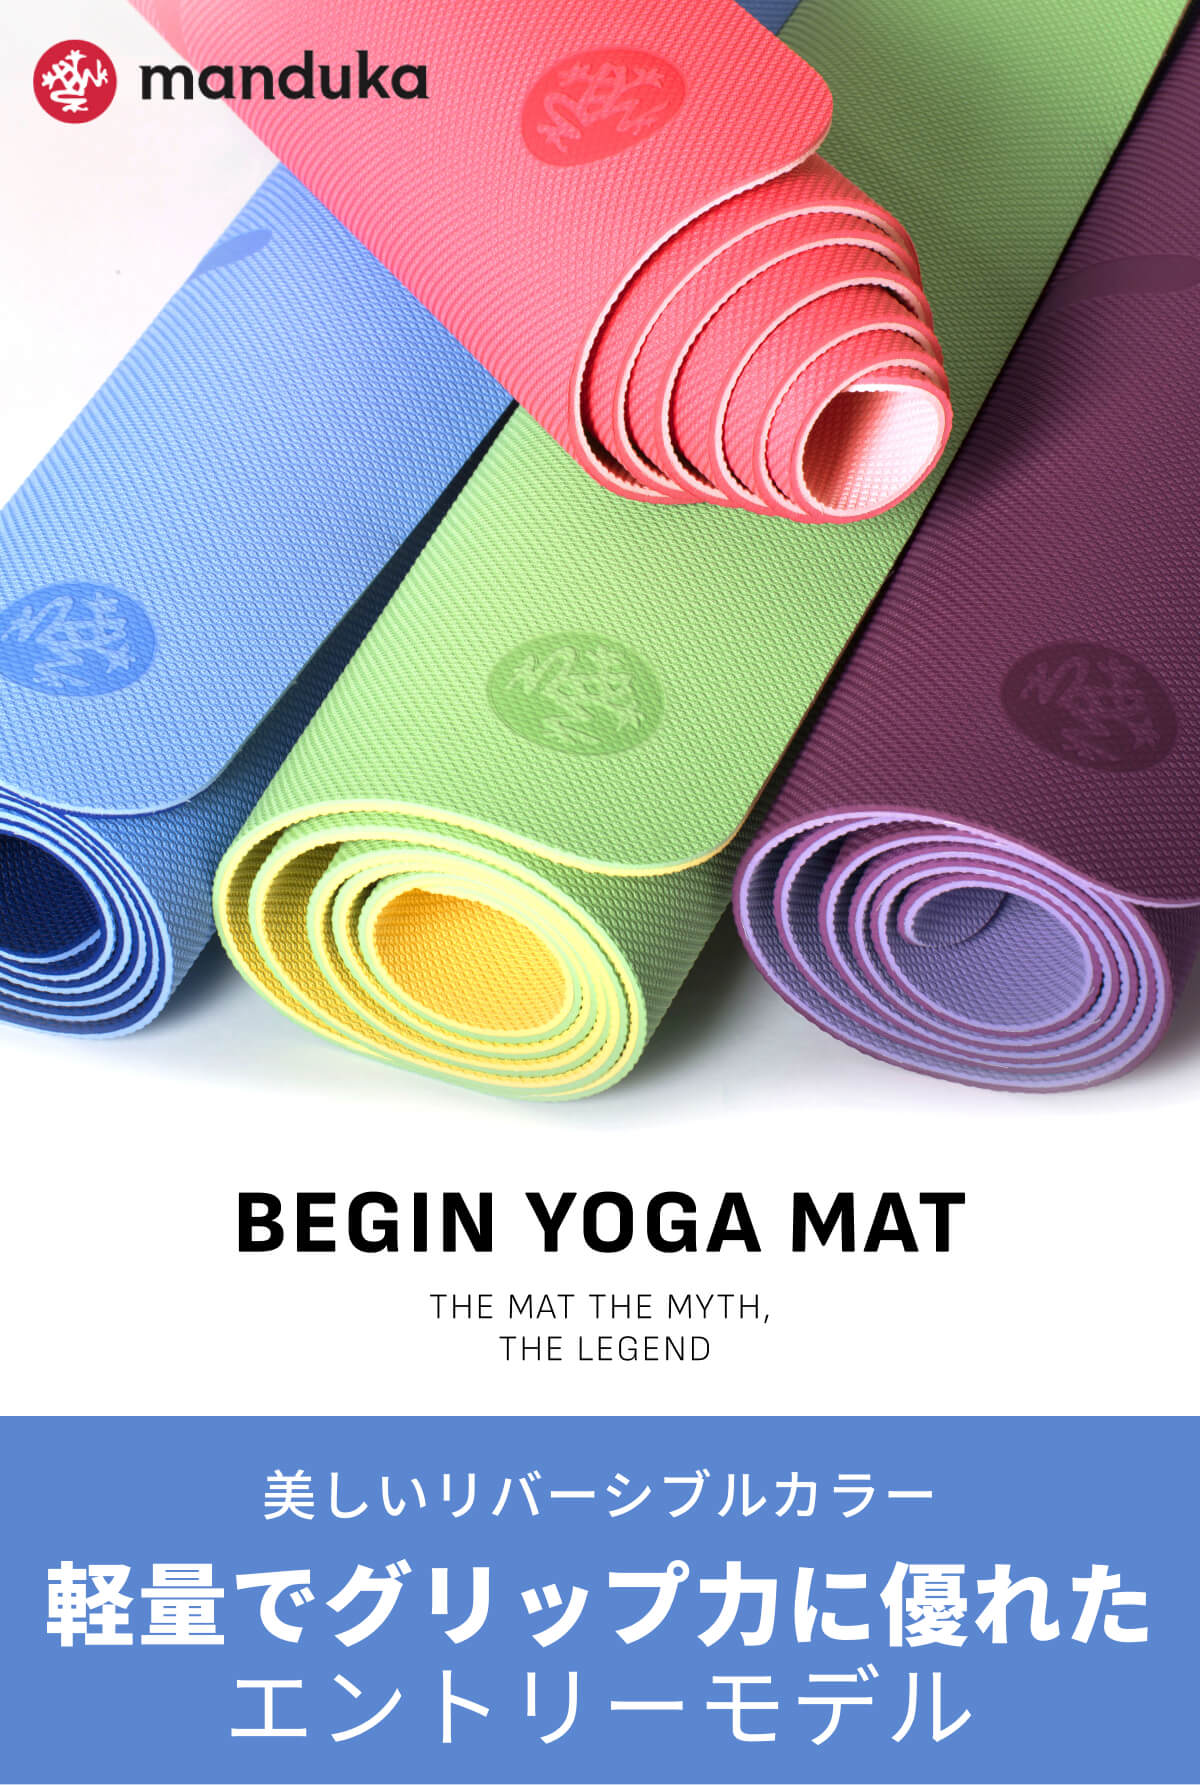 Manduka] Begin Begin Yoga Mat (5mm) / Lightweight Begin Yoga Mat